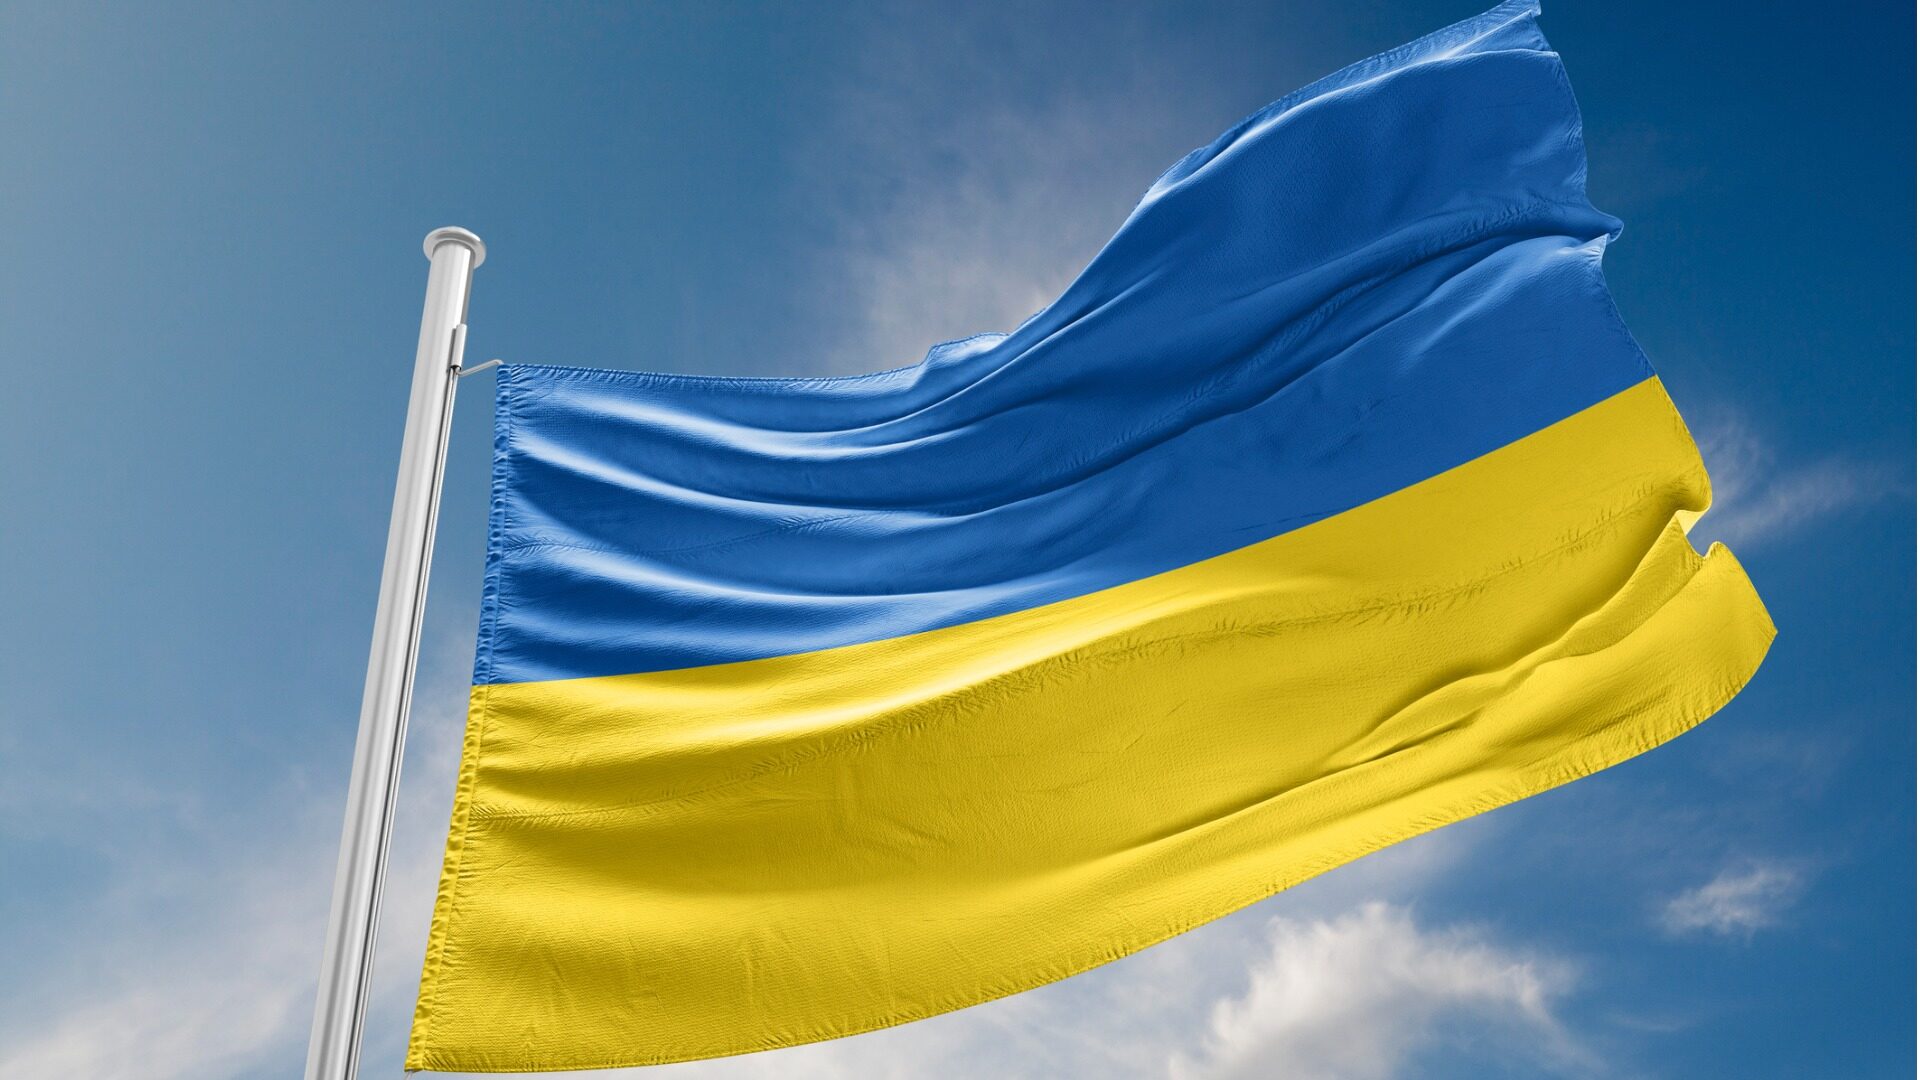 Ukrainan lippu voi toimia solidaarisuuden osoituksena Suomessa.